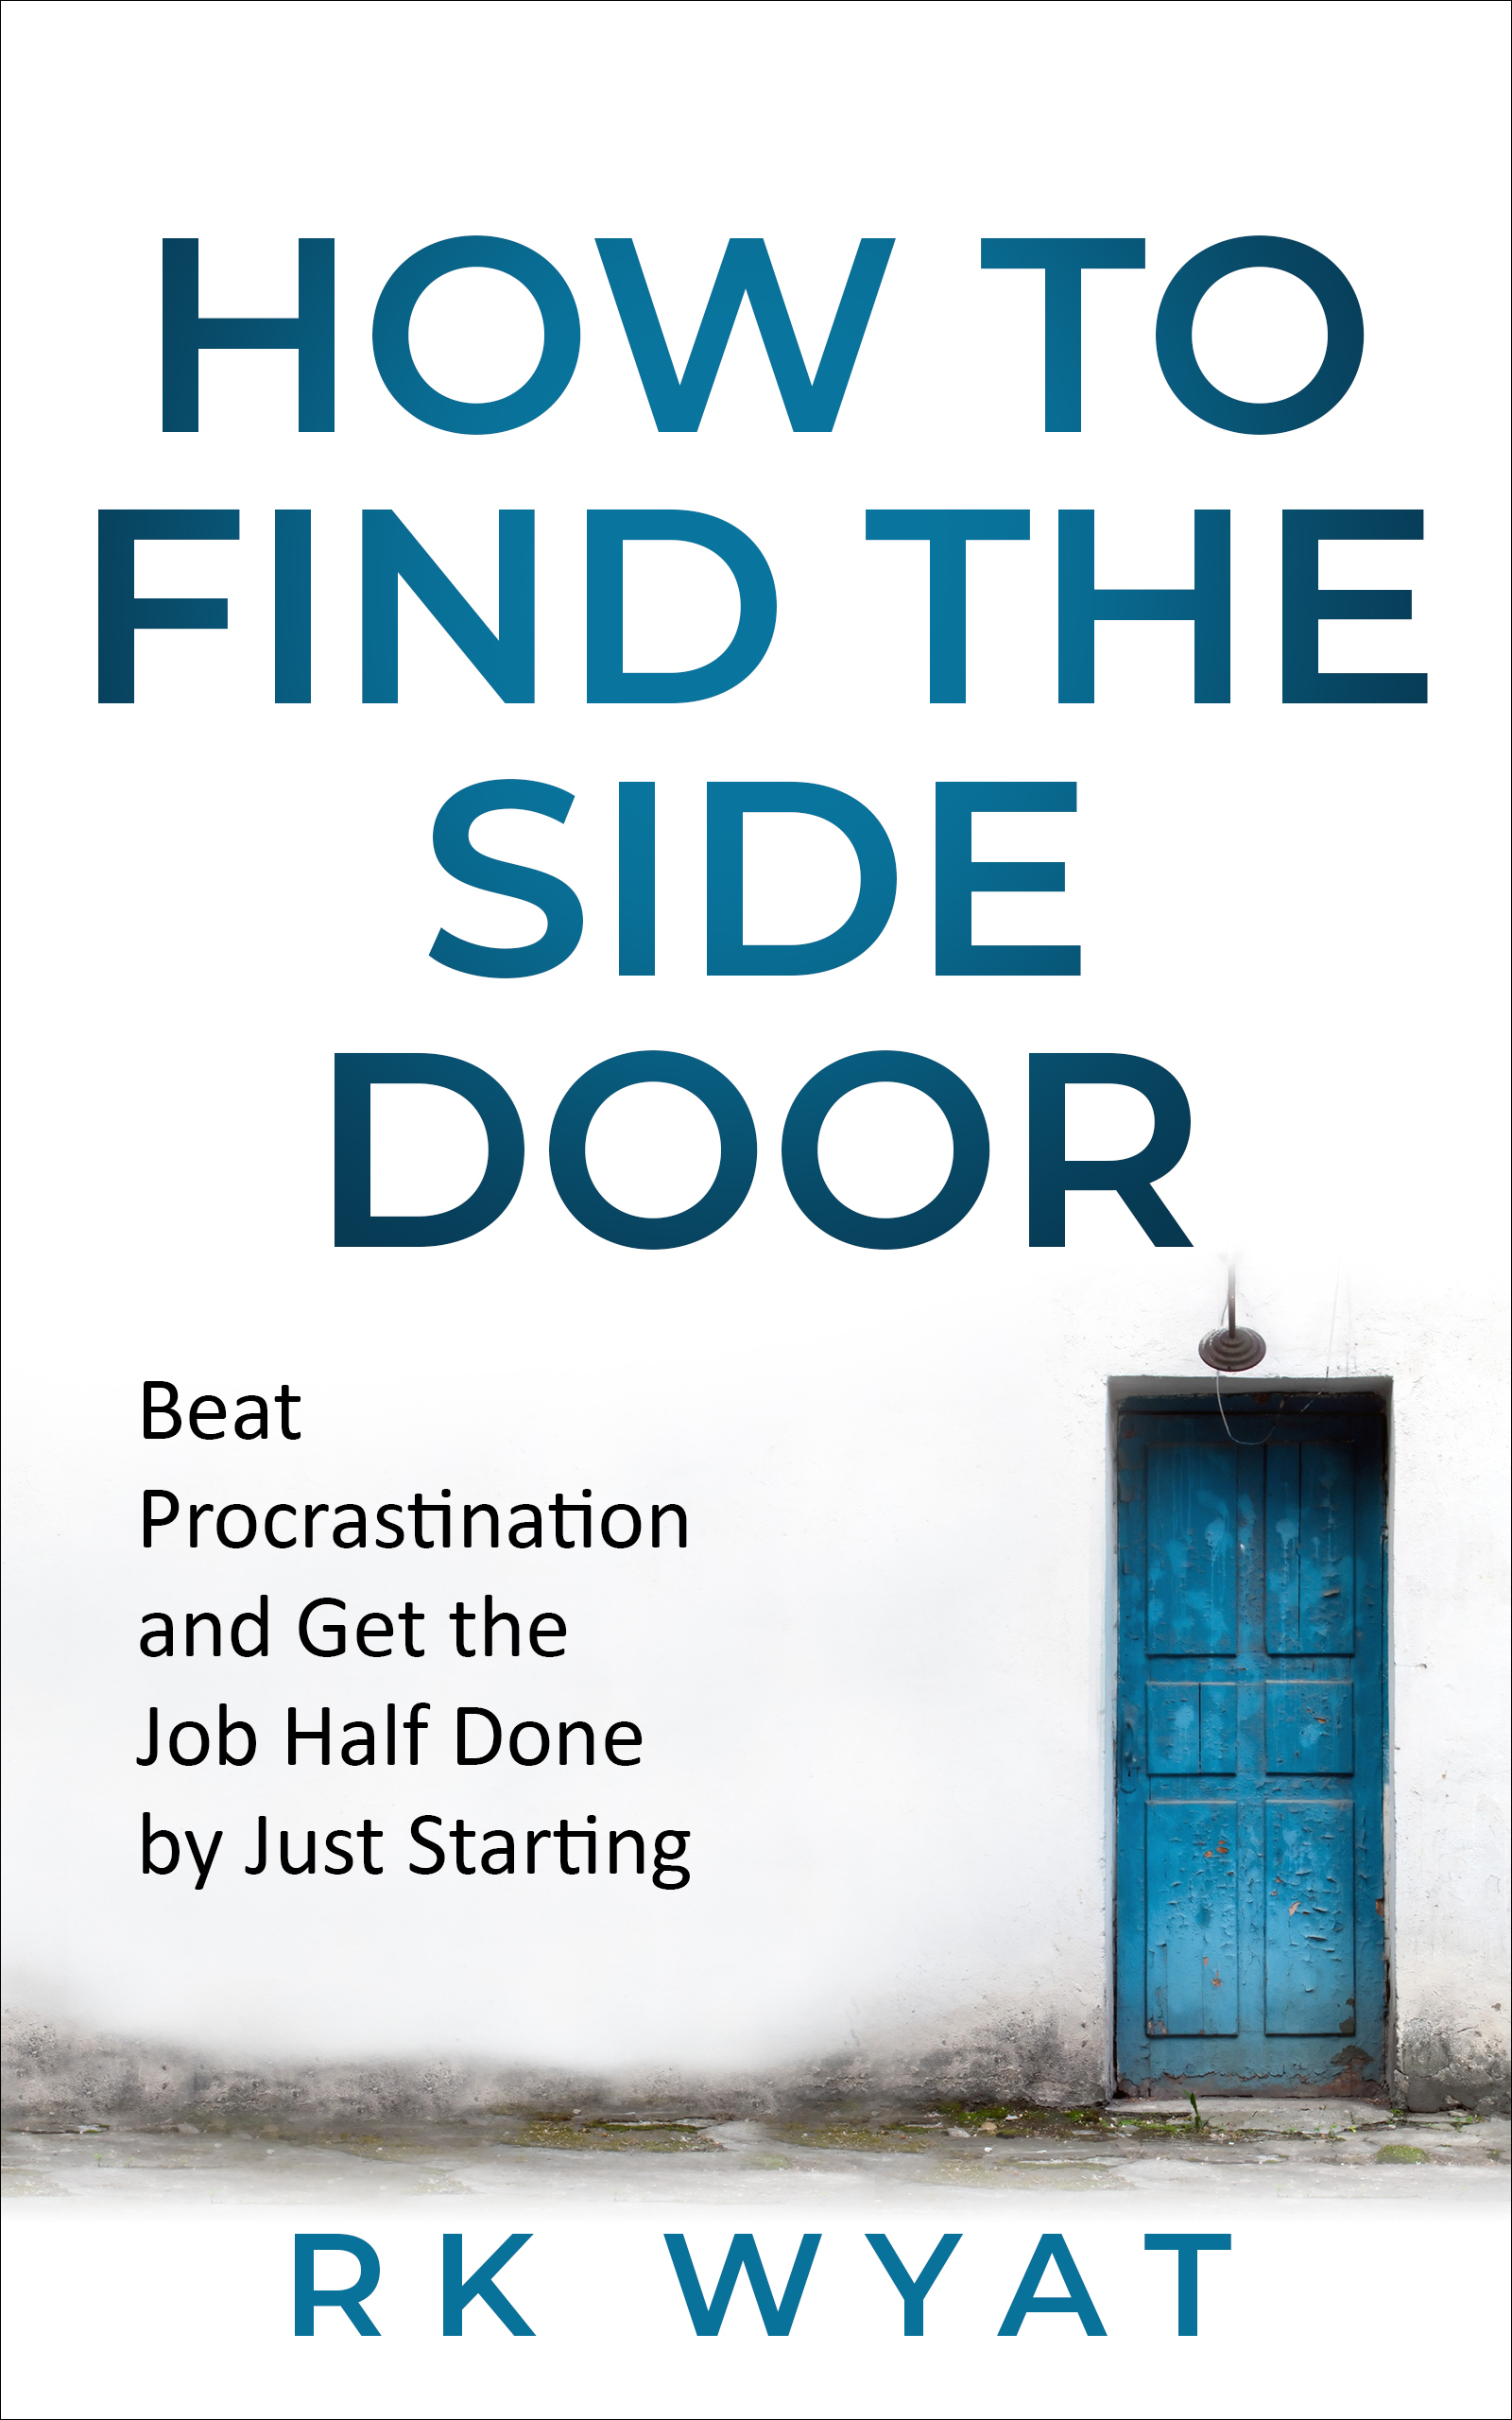 RK Wyat: How to Find the Side Door